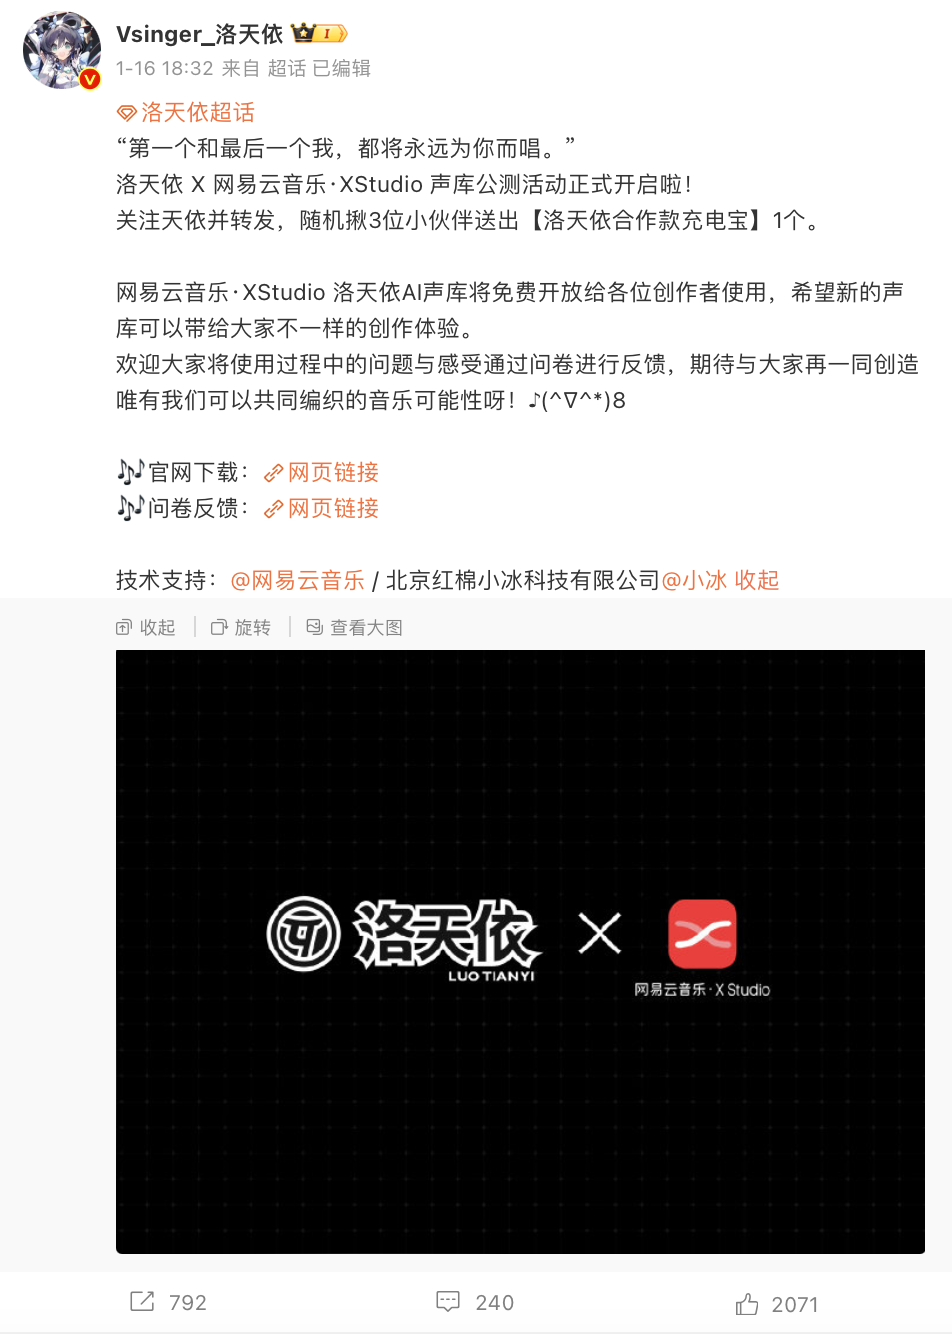 洛天依声库登陆网易云音乐XStudio语音合成软件 一键唱出中文歌曲